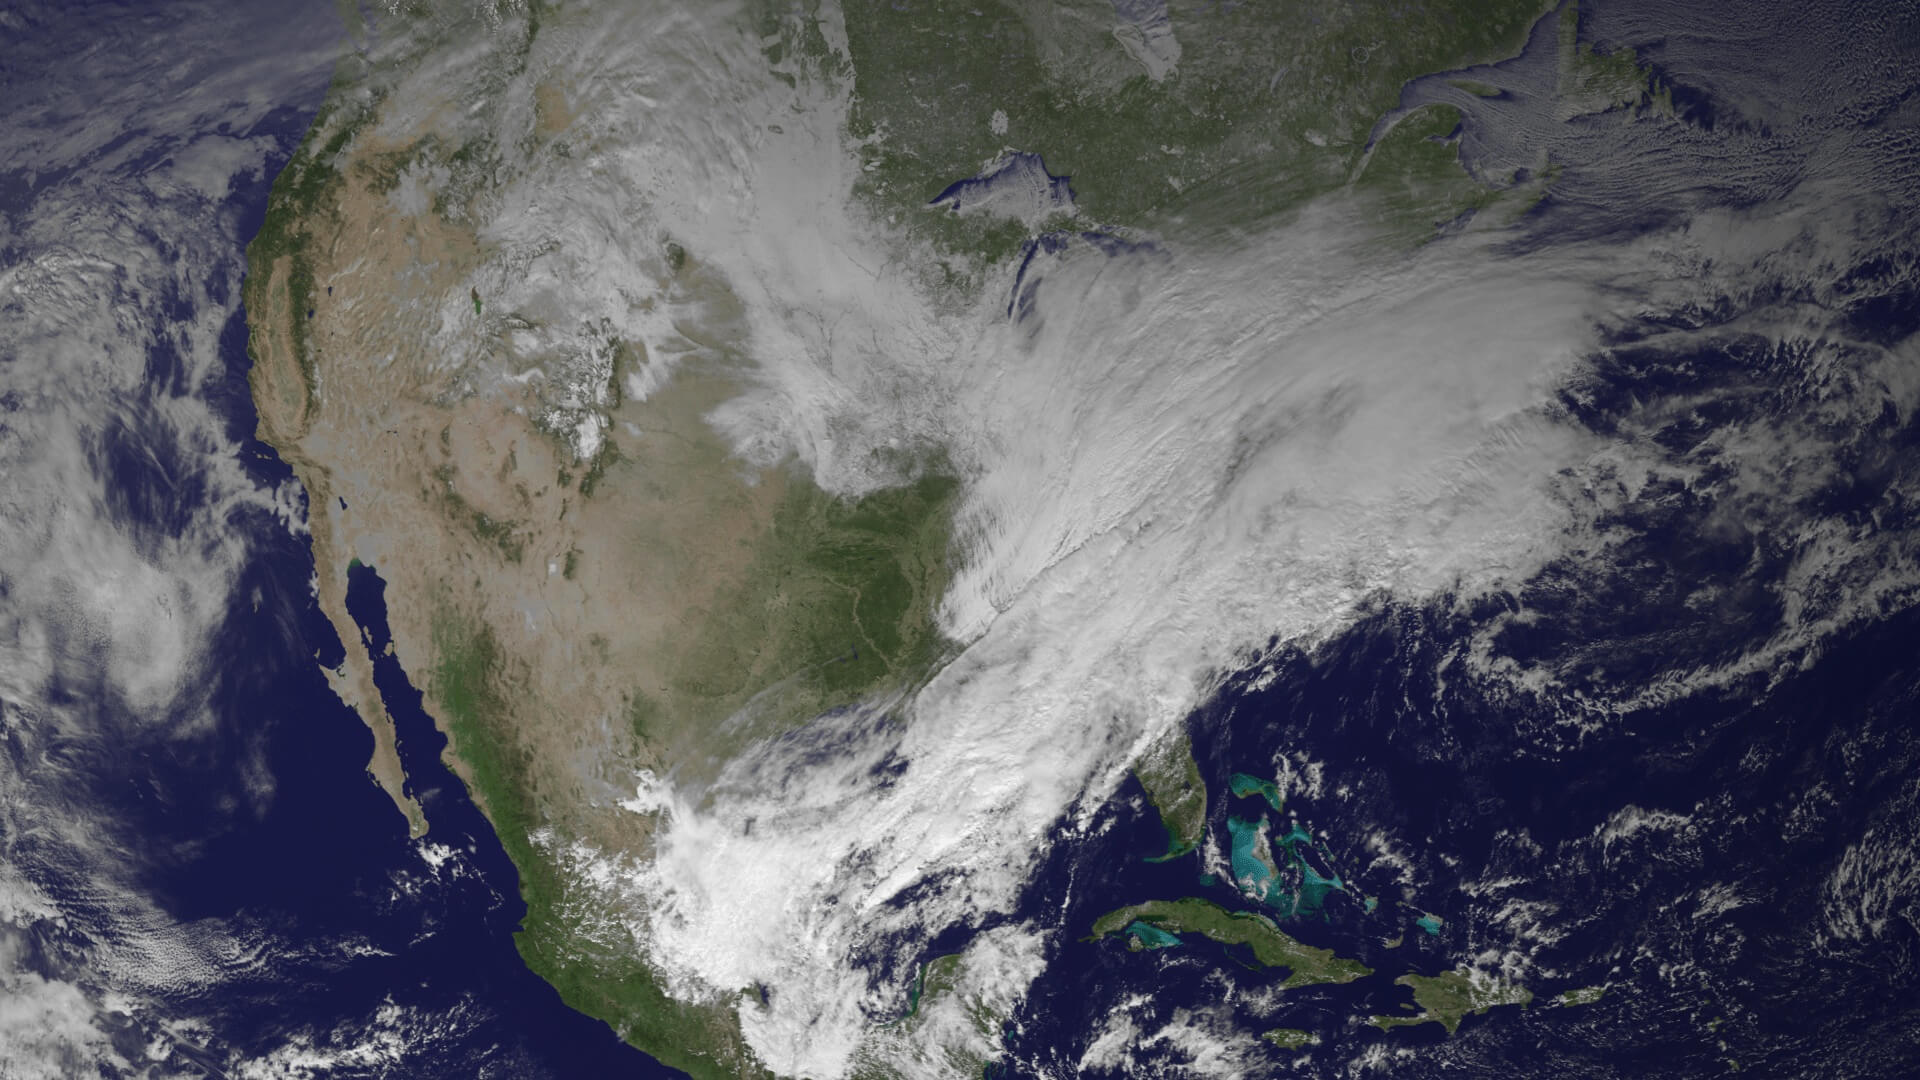 תמונה עדכנית של צפון אמריקה והמשבים הקוטביים המזרימים אוויר קר לחוף המזרחי, בעוד המערב נשאר יבש. צילום: NOAA